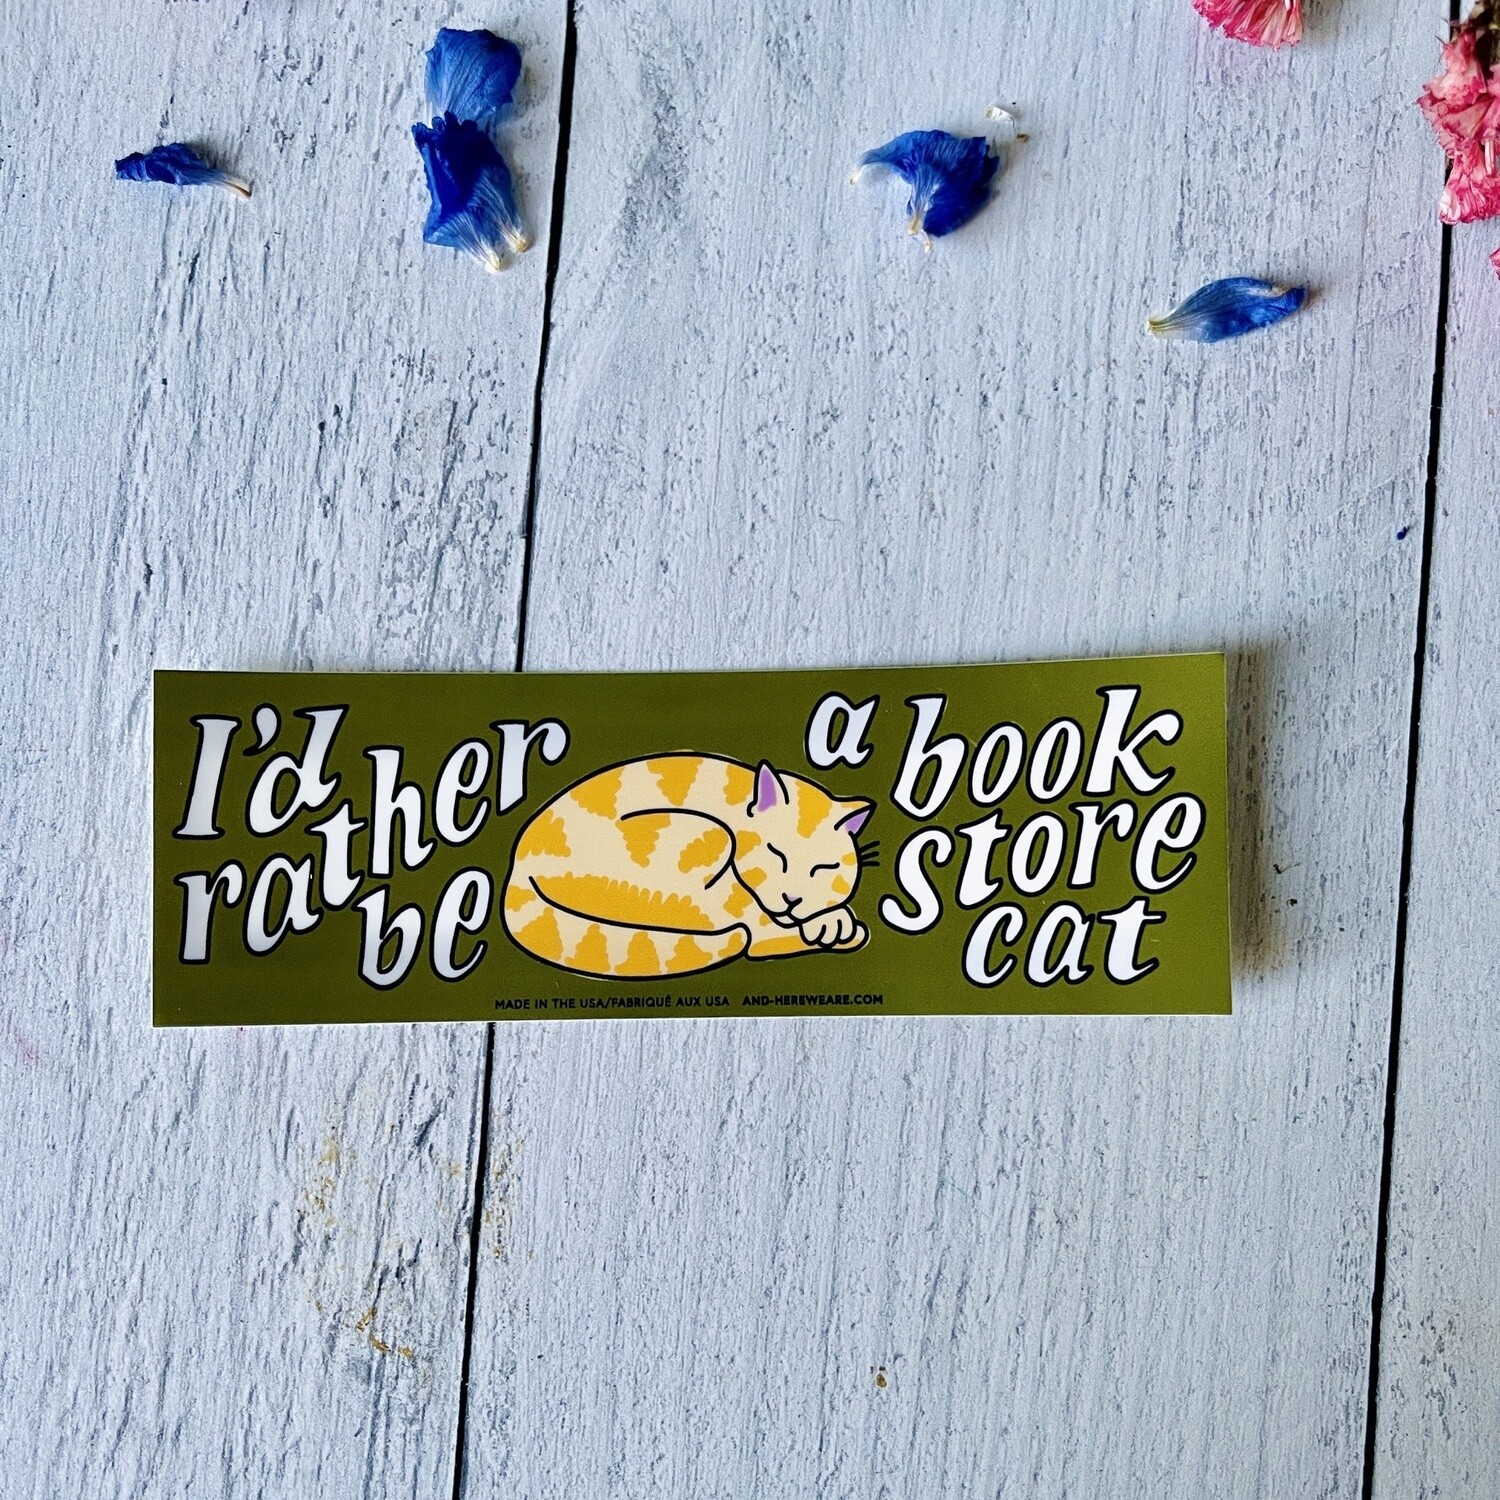 I'd Rather Be a Bookstore Cat Bumper Sticker